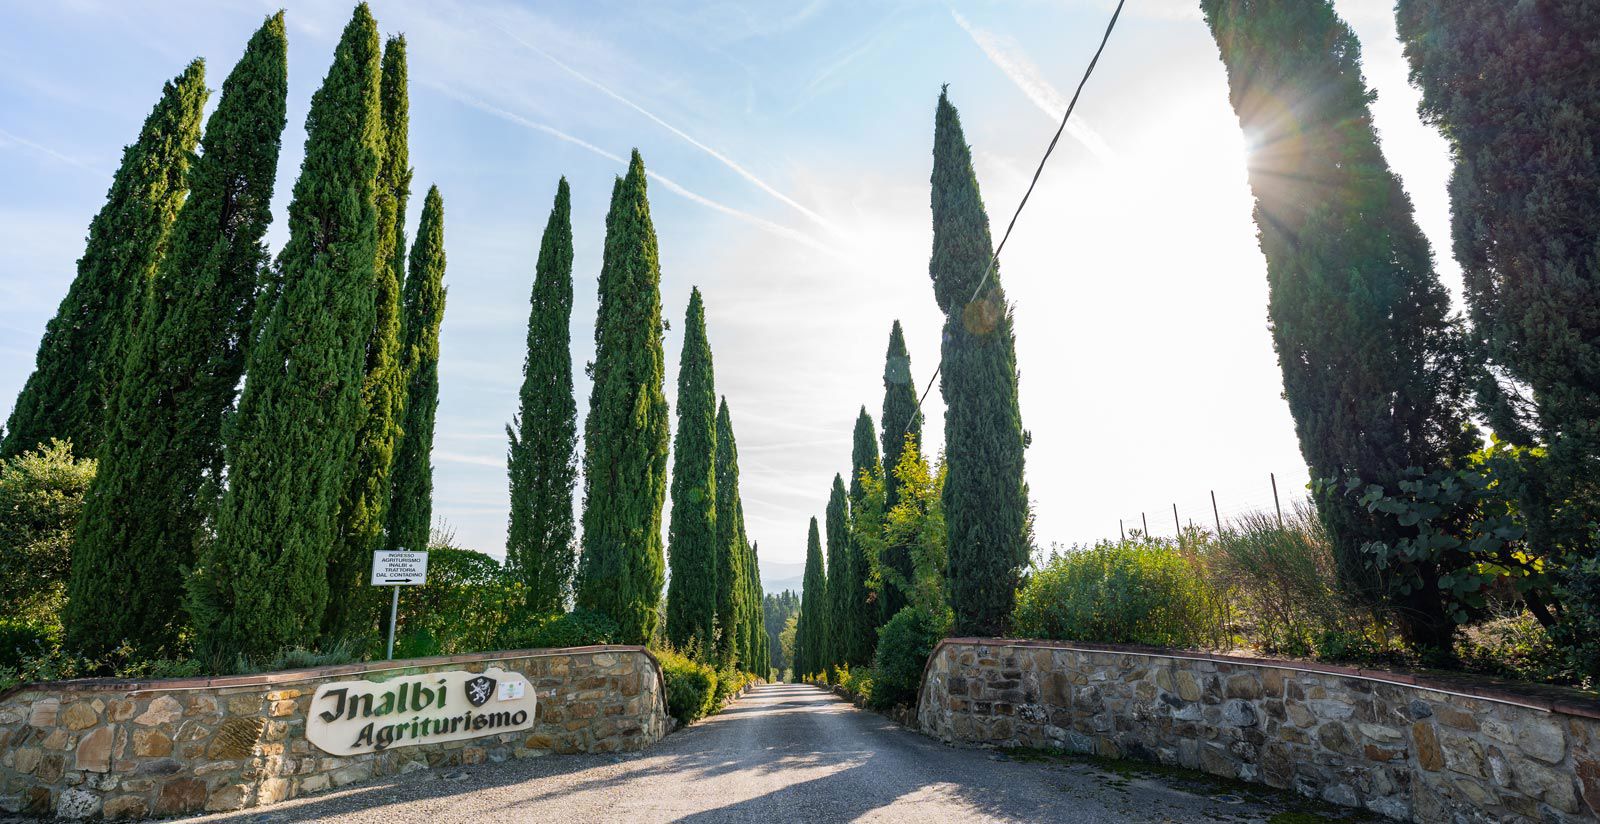 Vecchio Borgo di Inalbi - Where we are 3